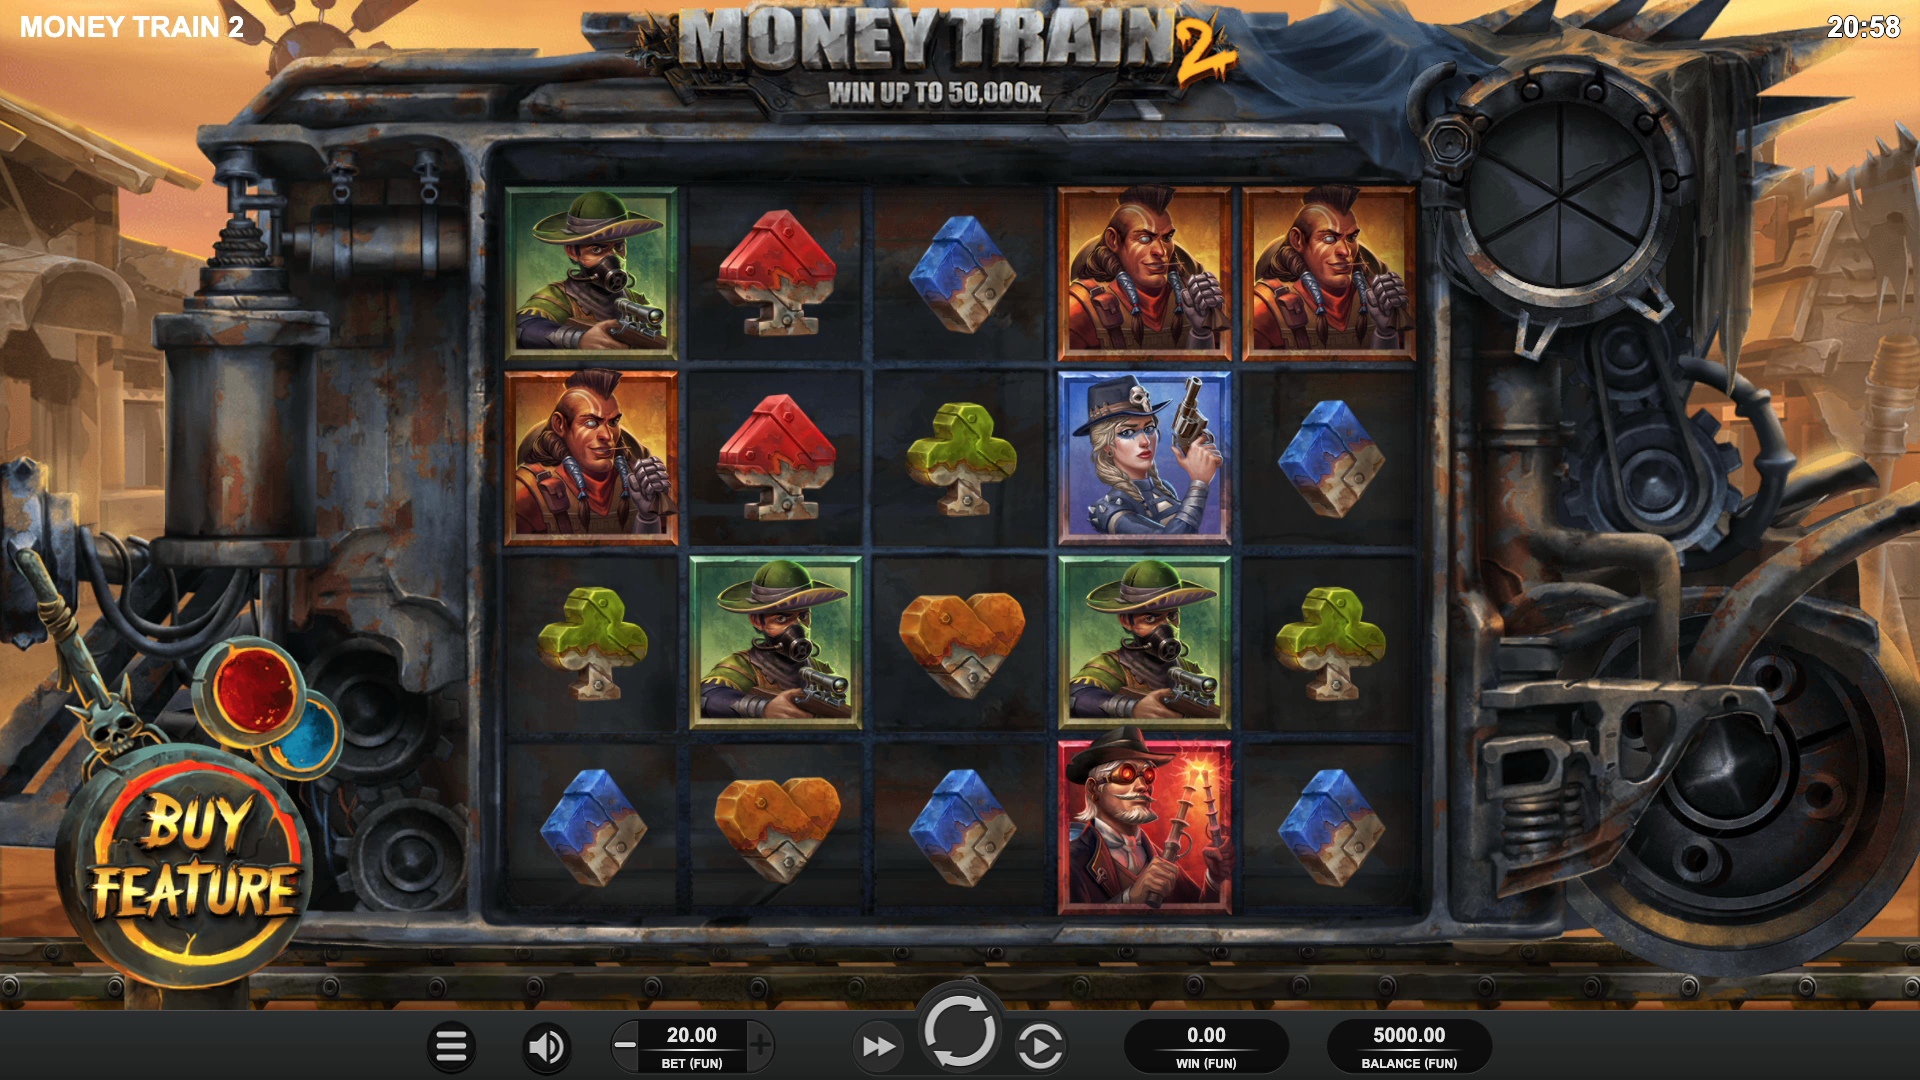 Интерфейс и оформление игрового автомата Money Train 2